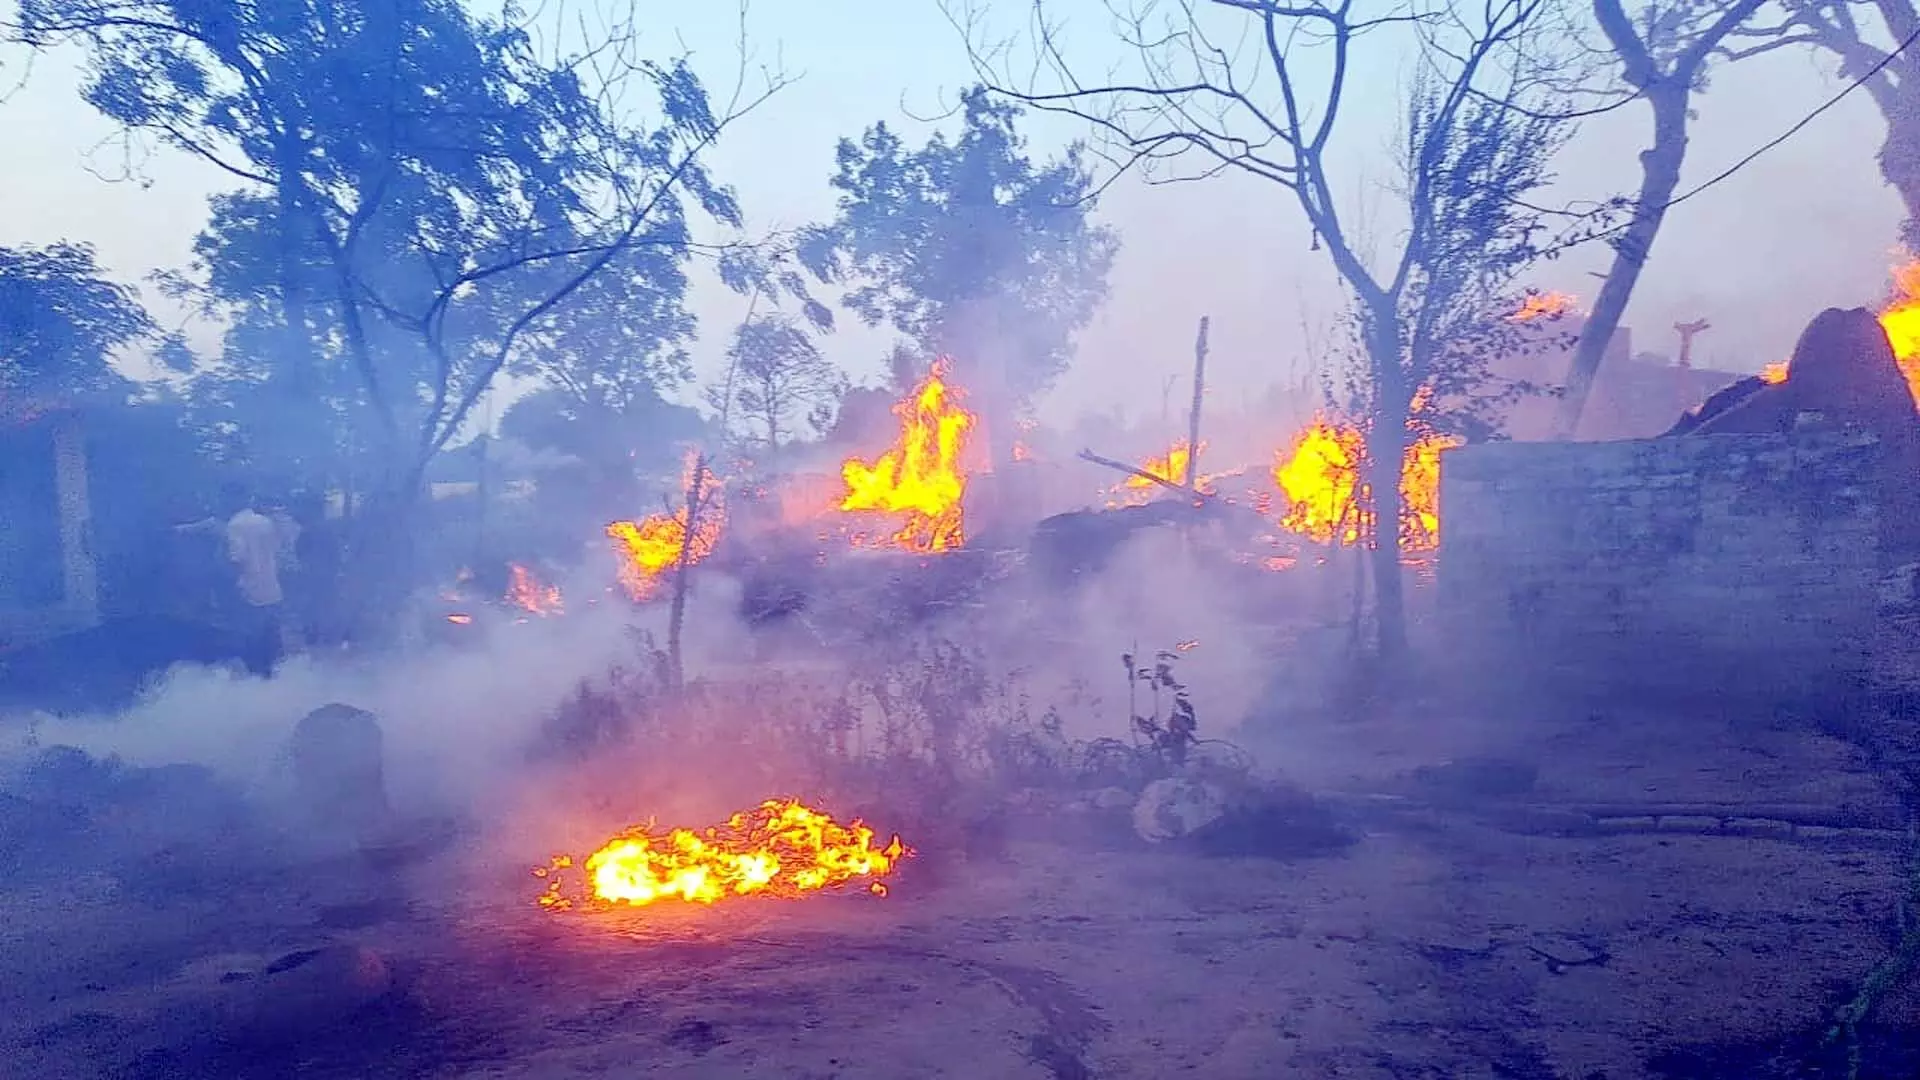 गोंडा जिले का चकिया गांव में अज्ञात कारणों से लगी आग ,41 घरों की गृहस्थी जलकर राख